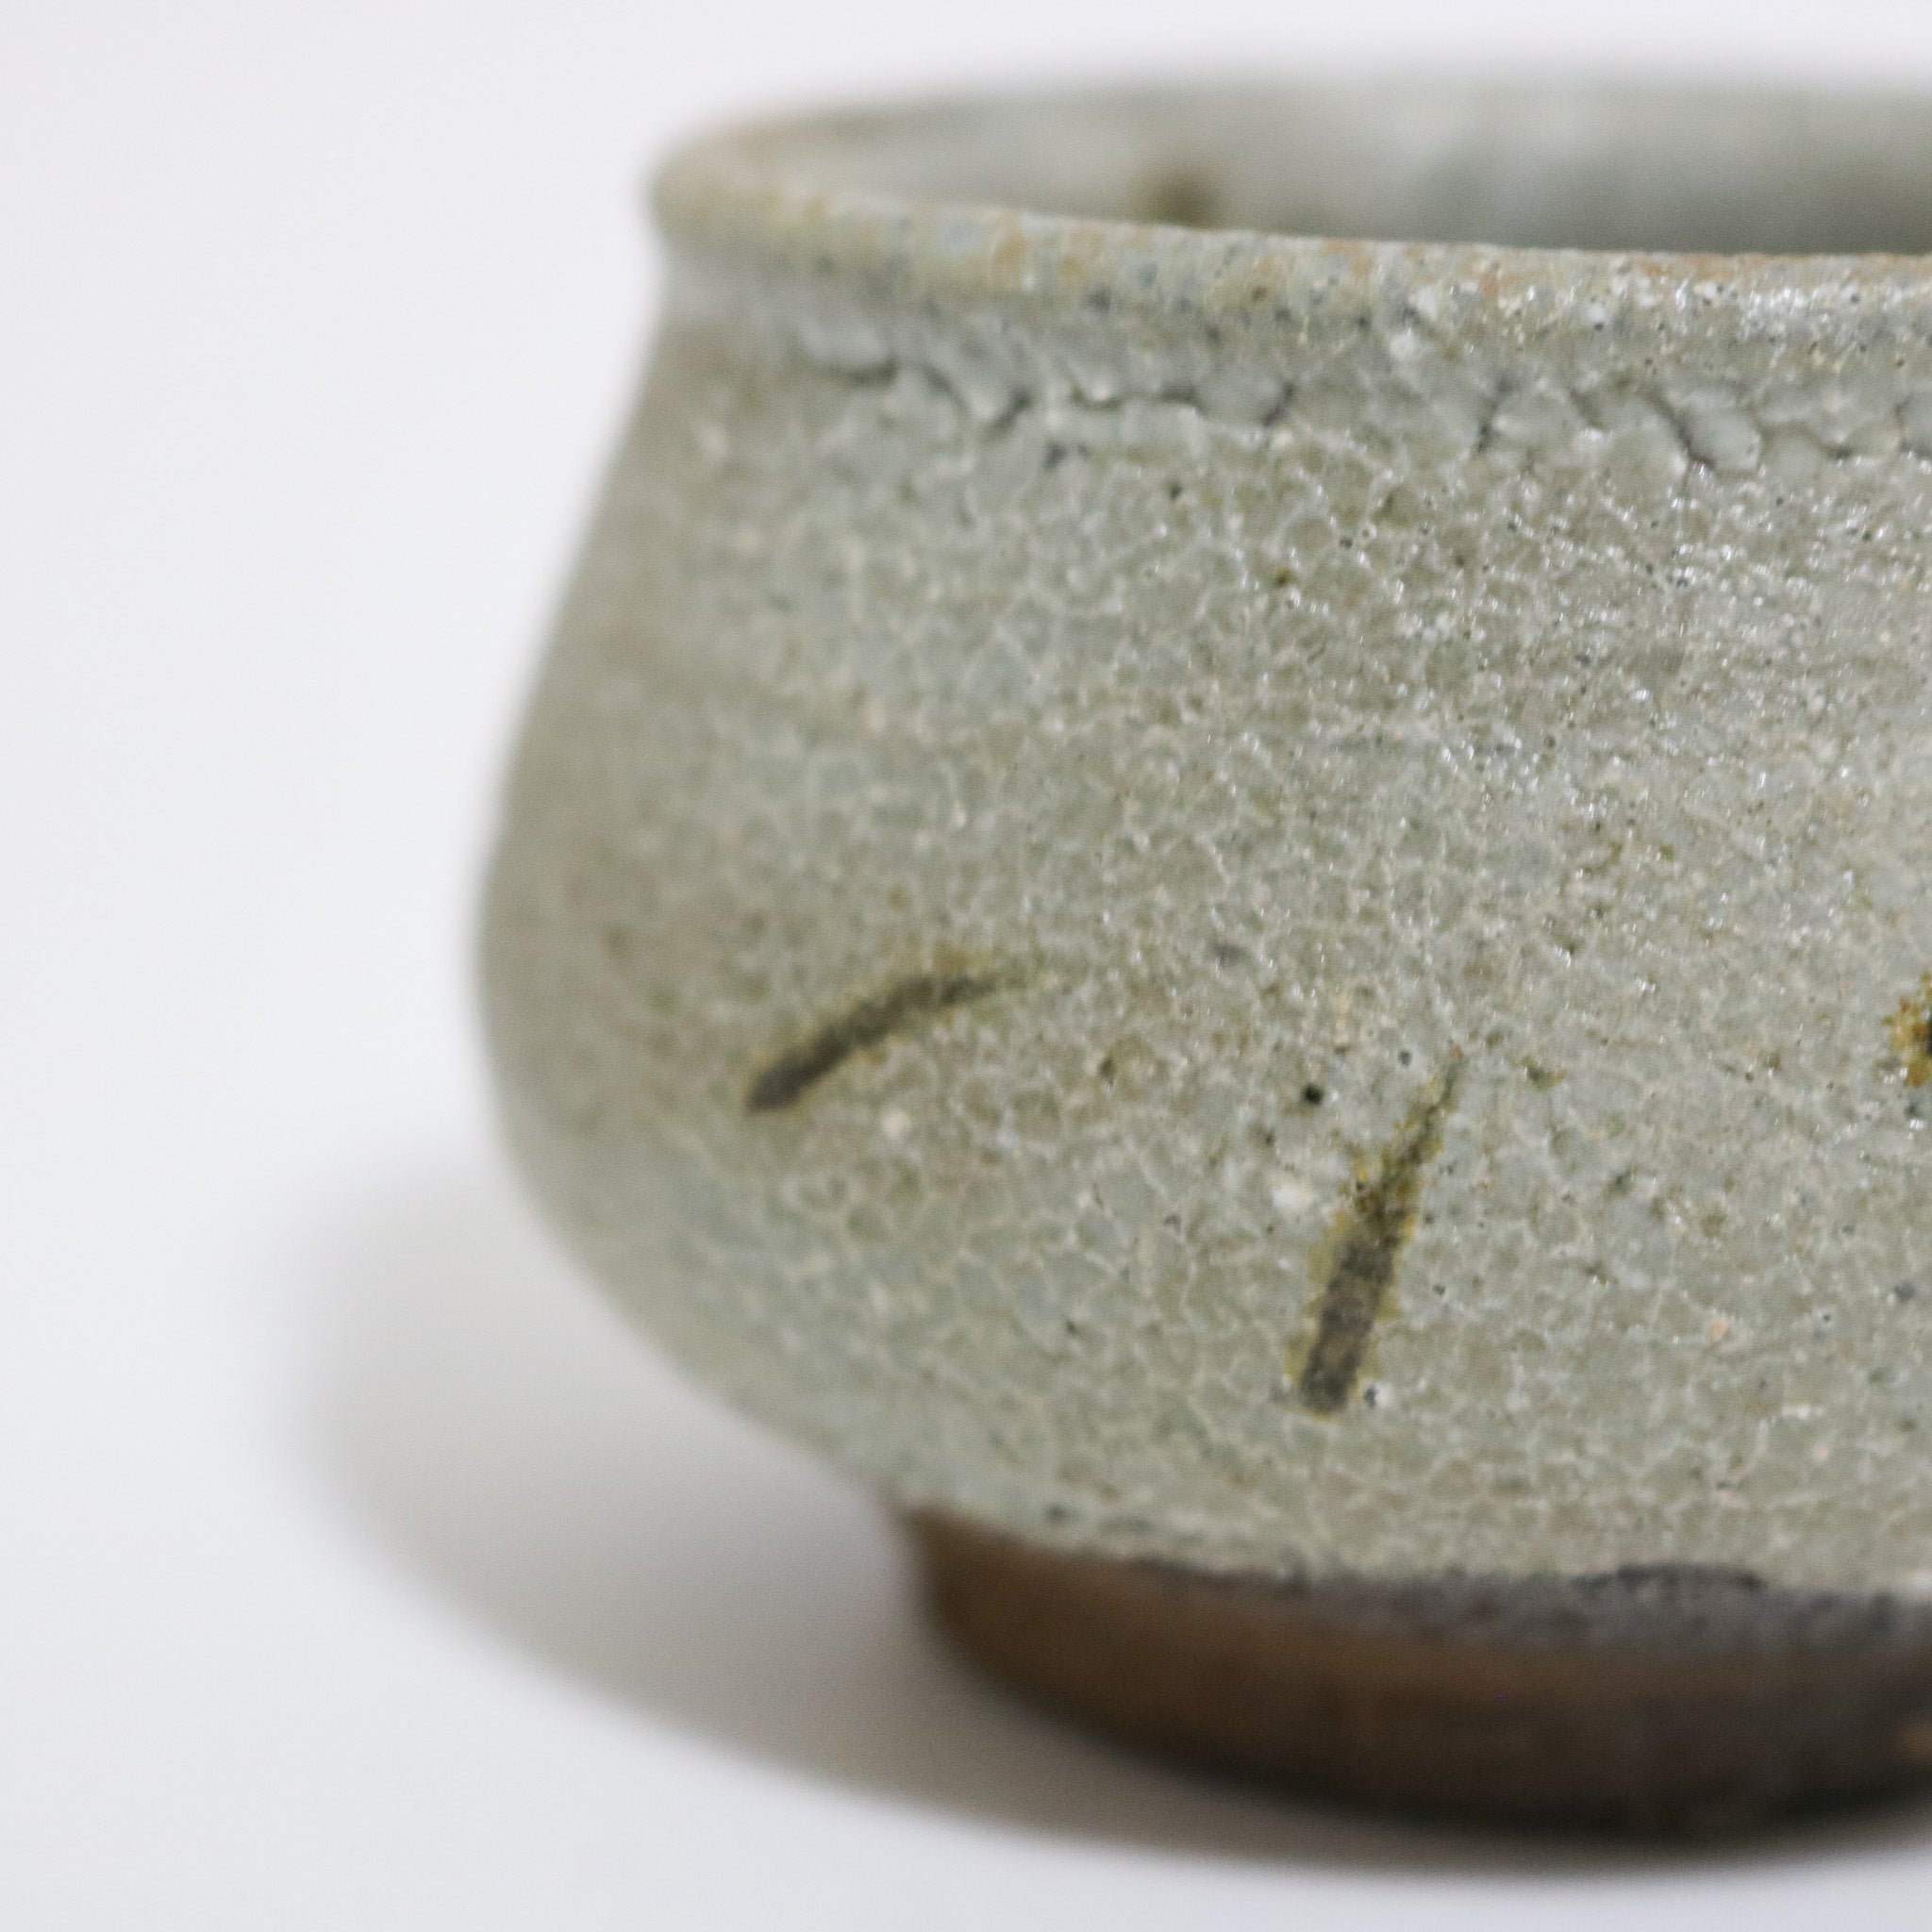 Mino Karatsu sake cup